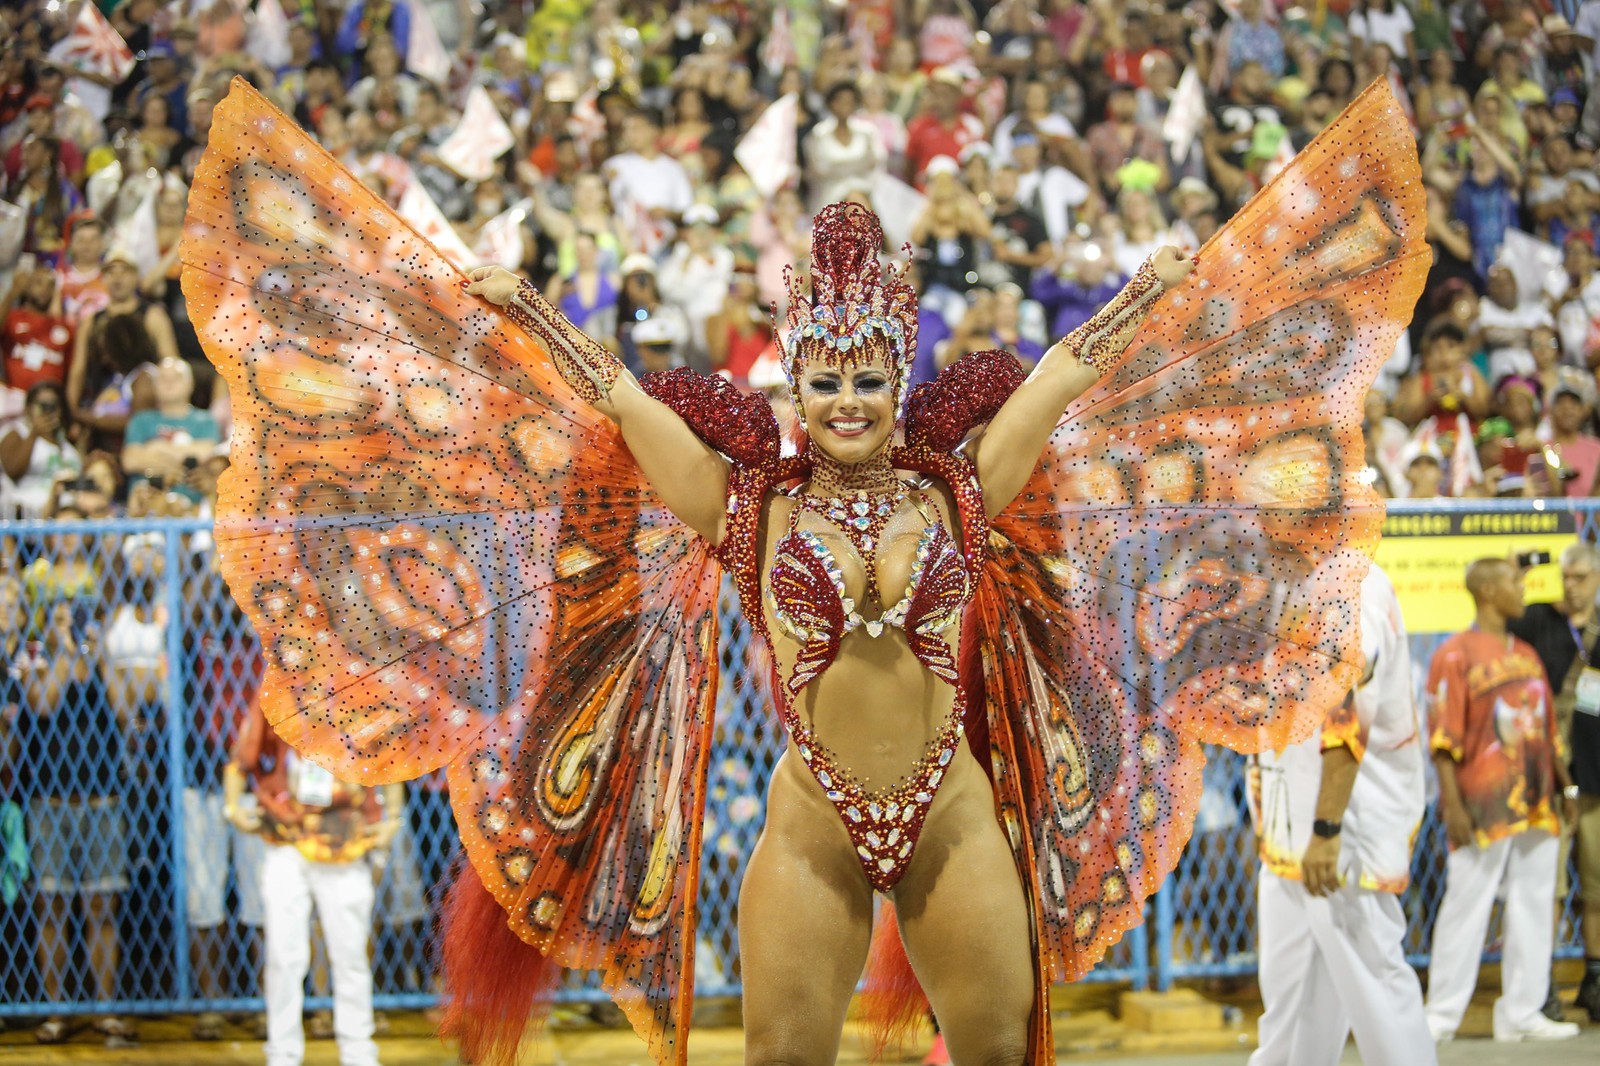 Вивиан Араужо карнавал Рио